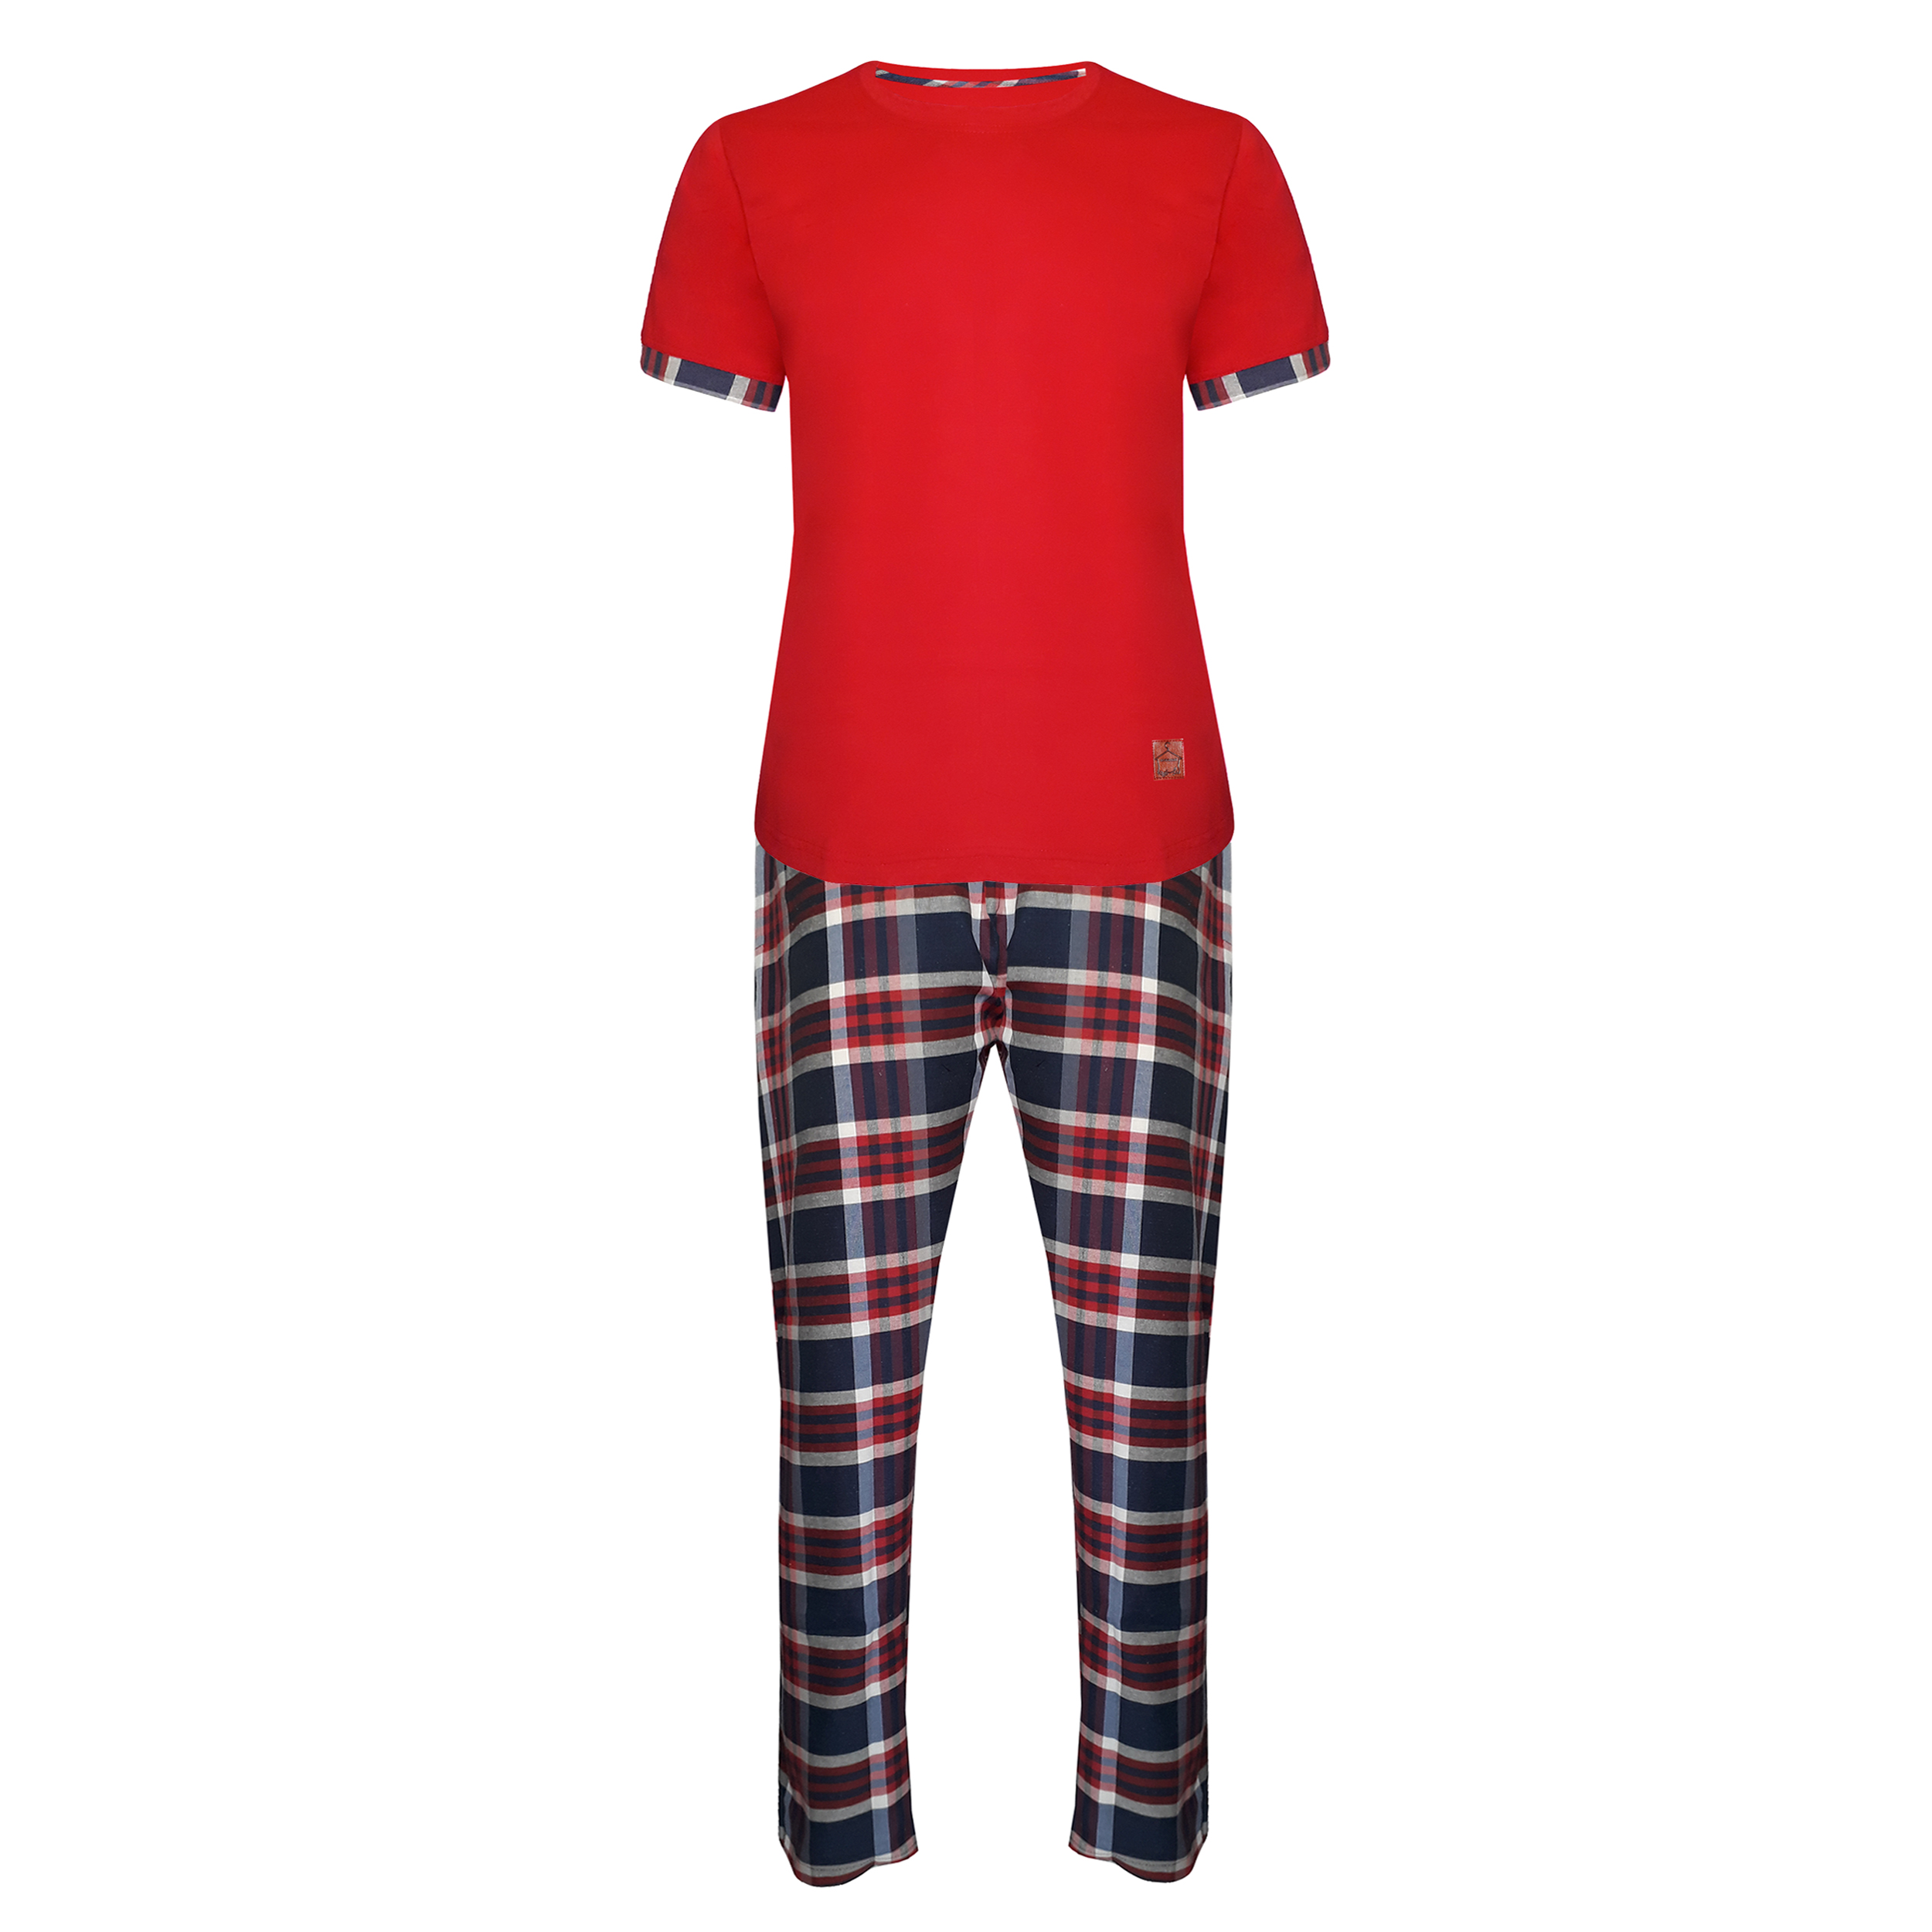 ست تی شرت و شلوار مردانه لباس خونه مدل طه 000412 کد 5814626 رنگ قرمز